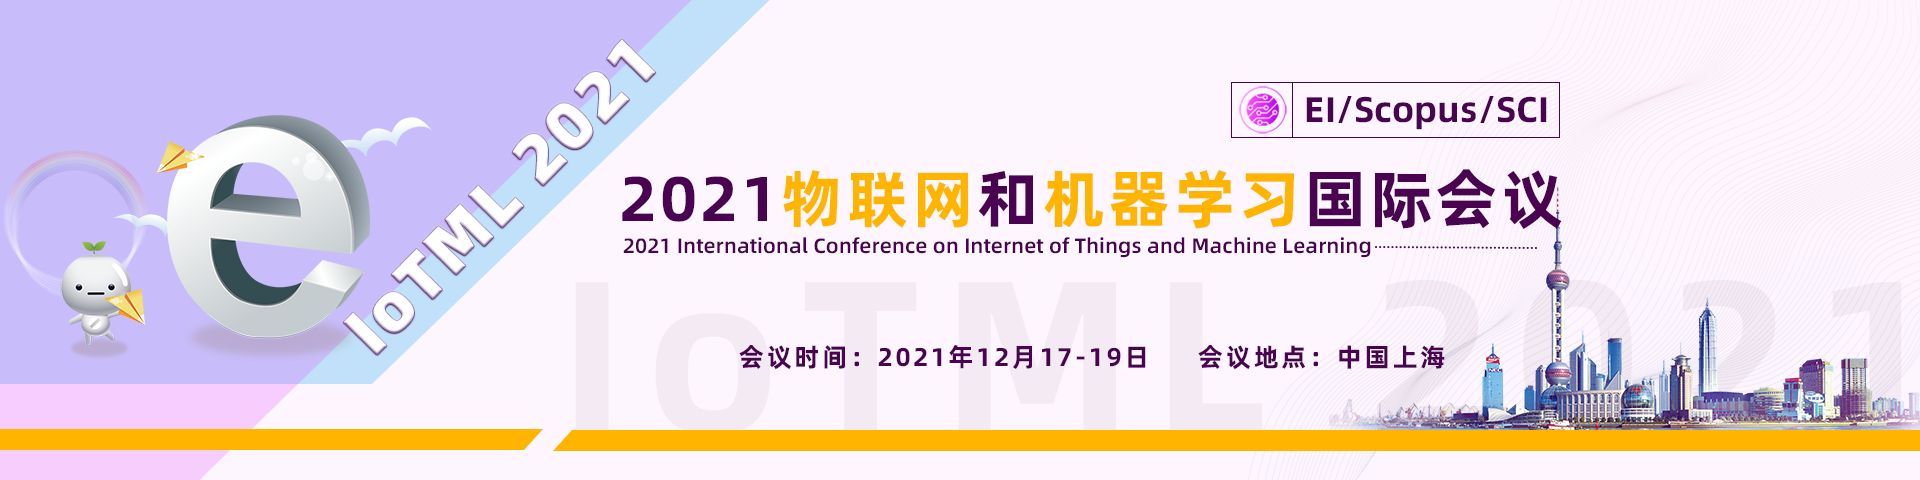 12月上海IoTML2021-banner中-何霞丽-20210609.png